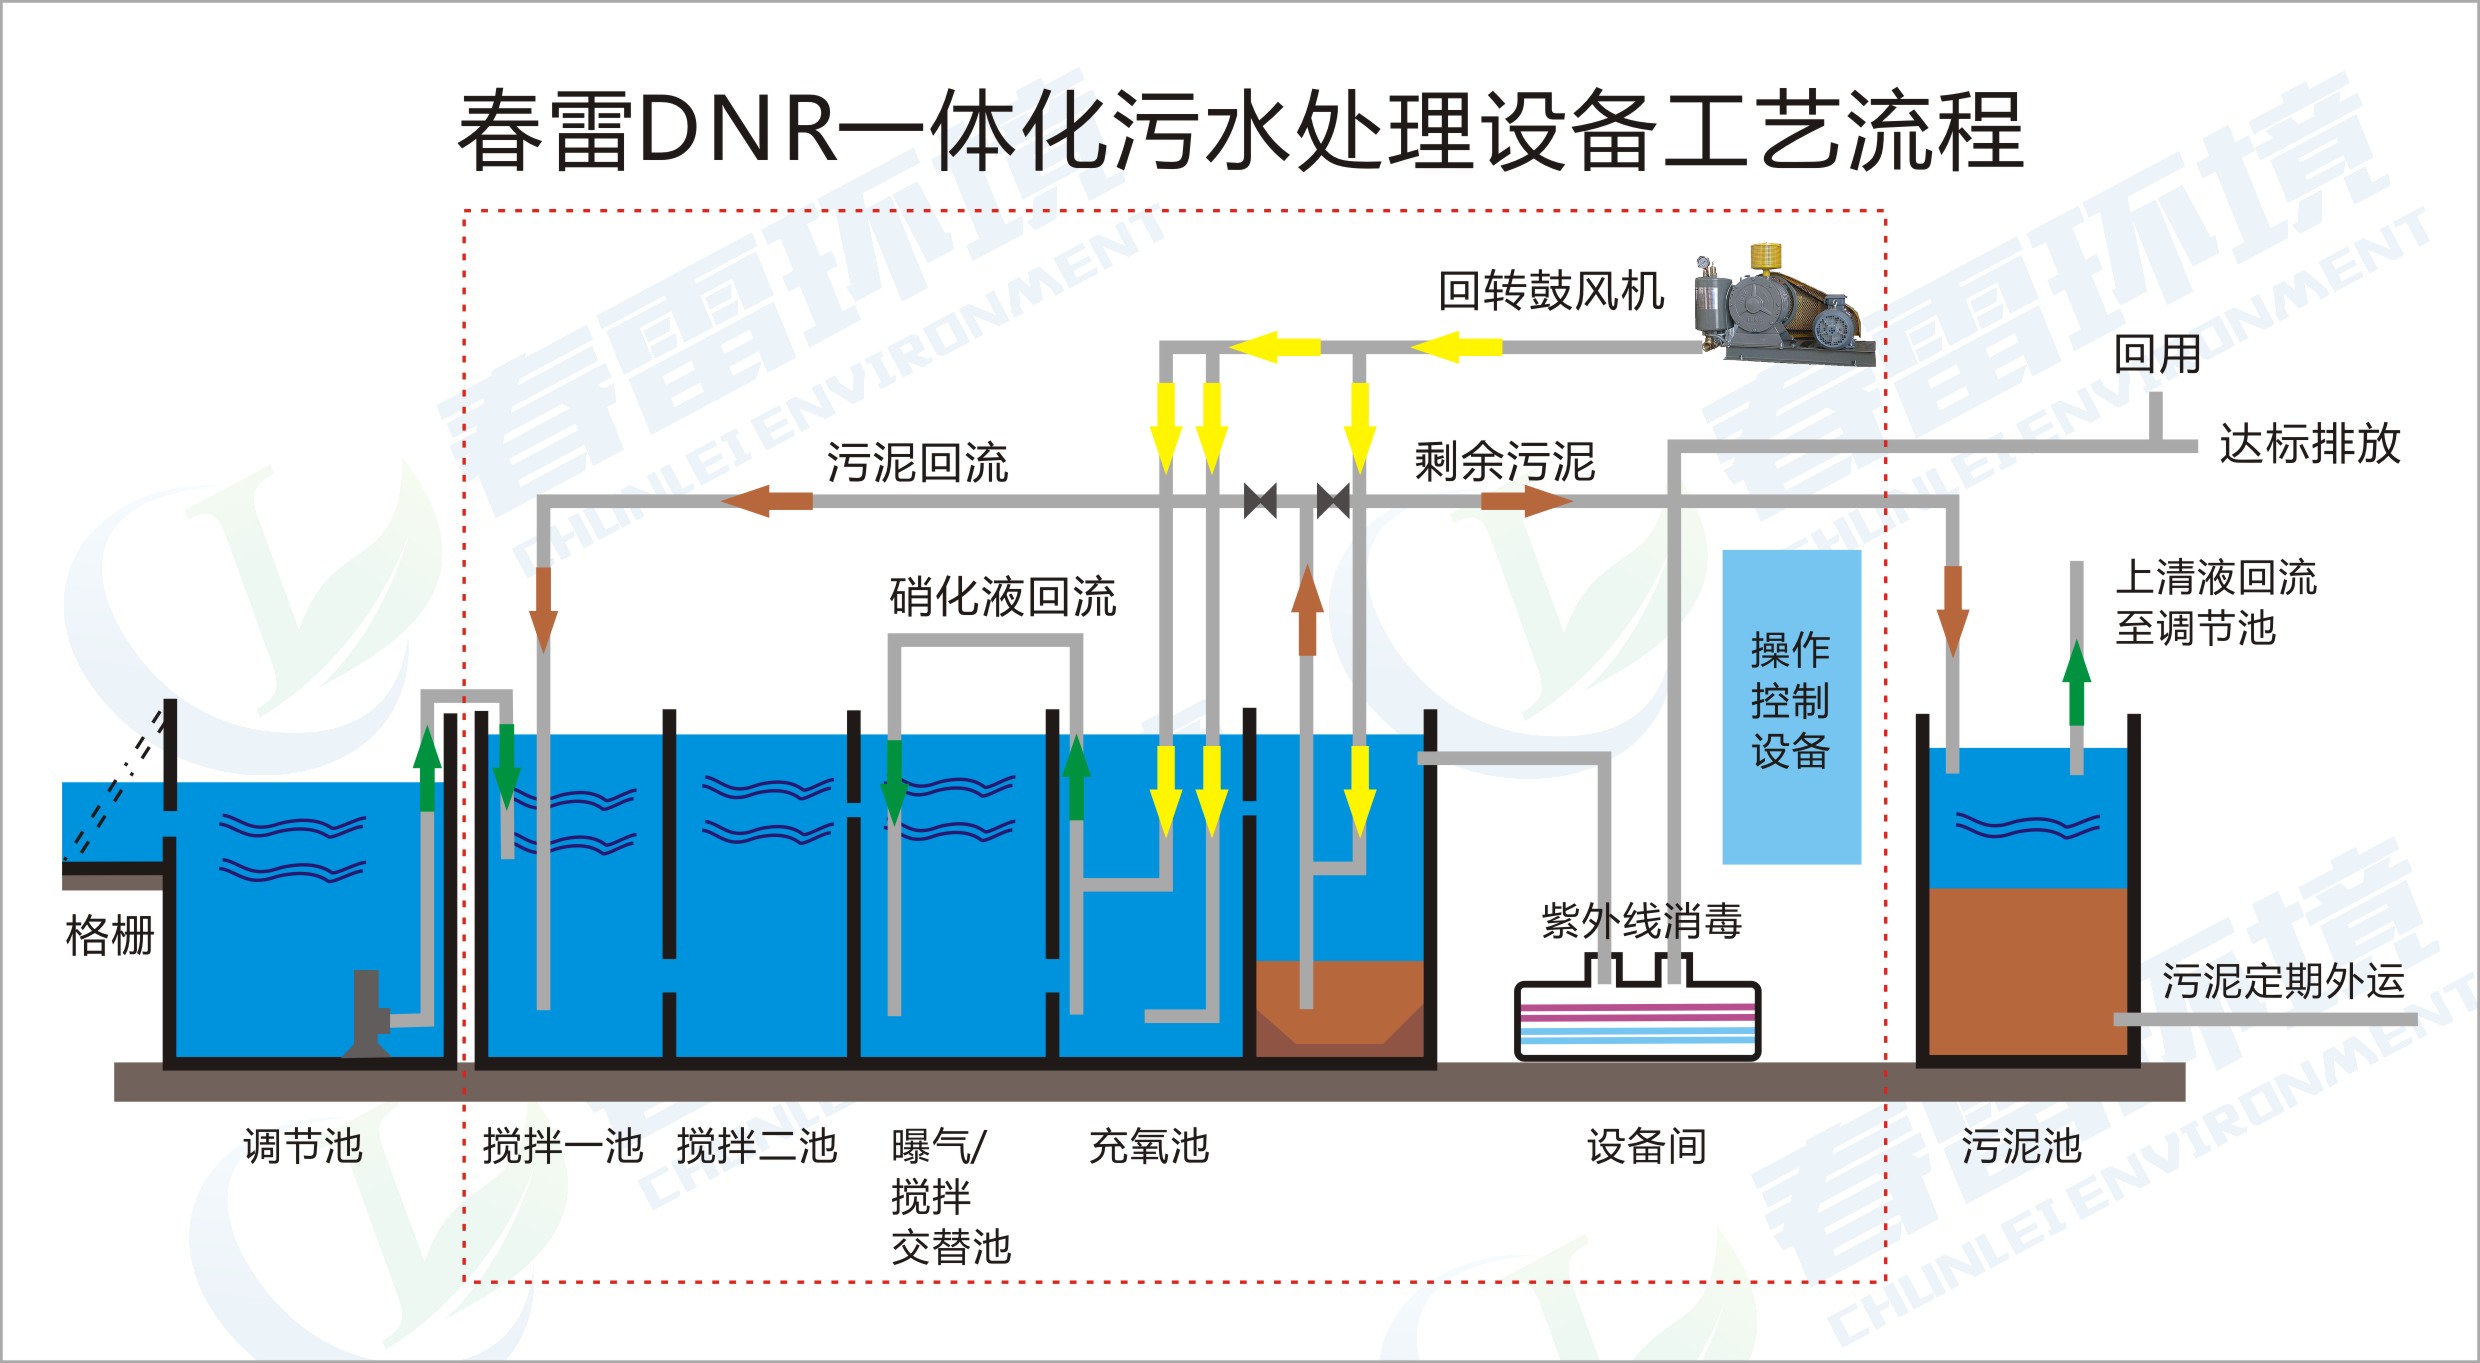 春雷环境DNR农村污水处理技术